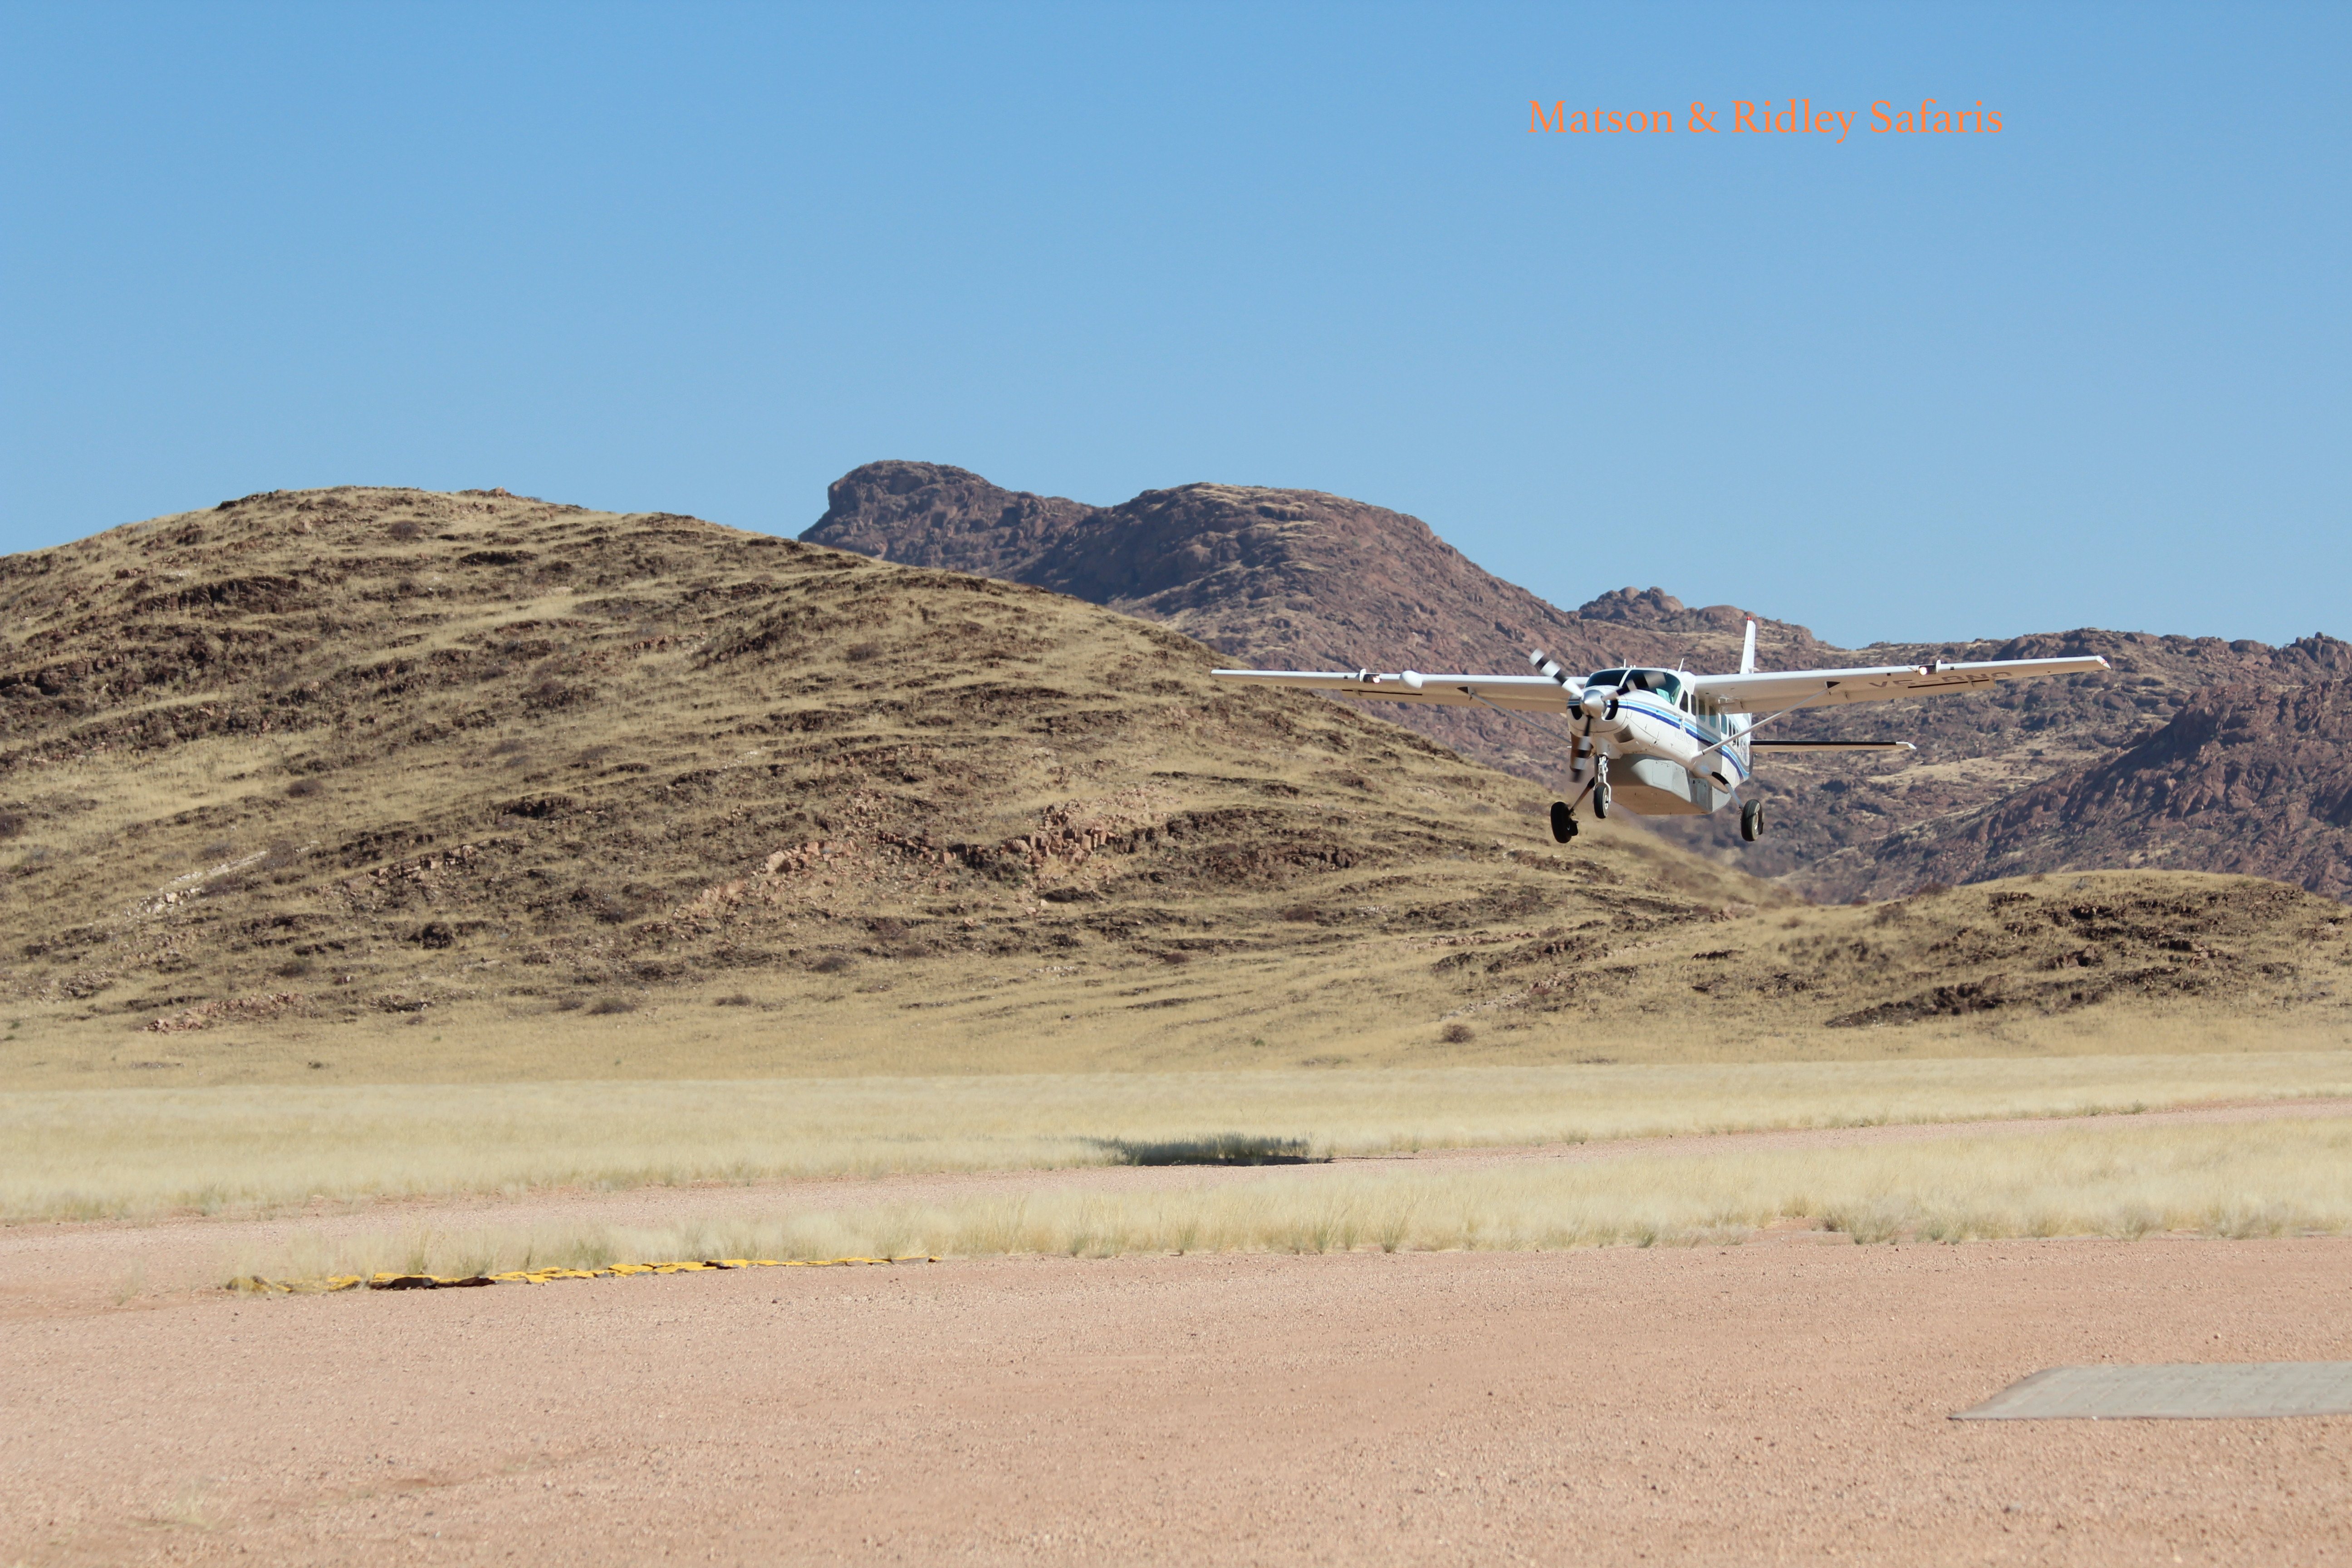 Wilderness Air plane takes off at Hoanib airstrip.